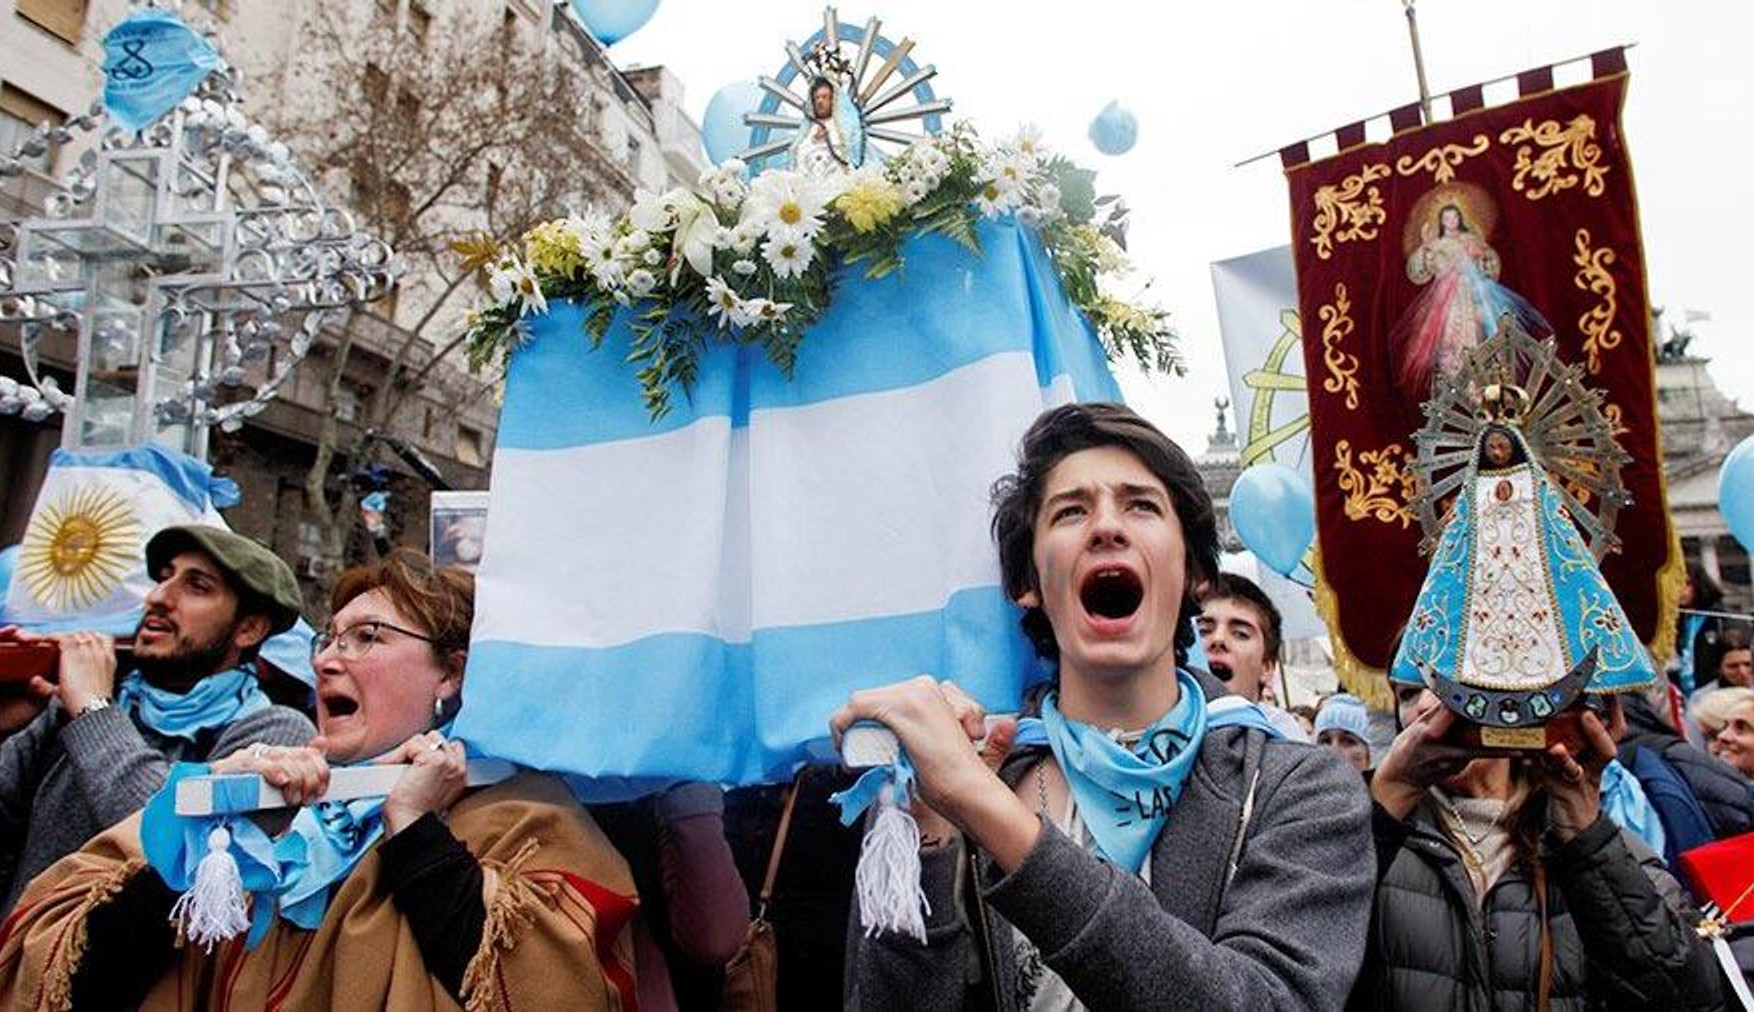 Аргентина легалізувала аборти. У 2018 році відповідний законопроект був відхилений верхньою палатою Конгресу країни